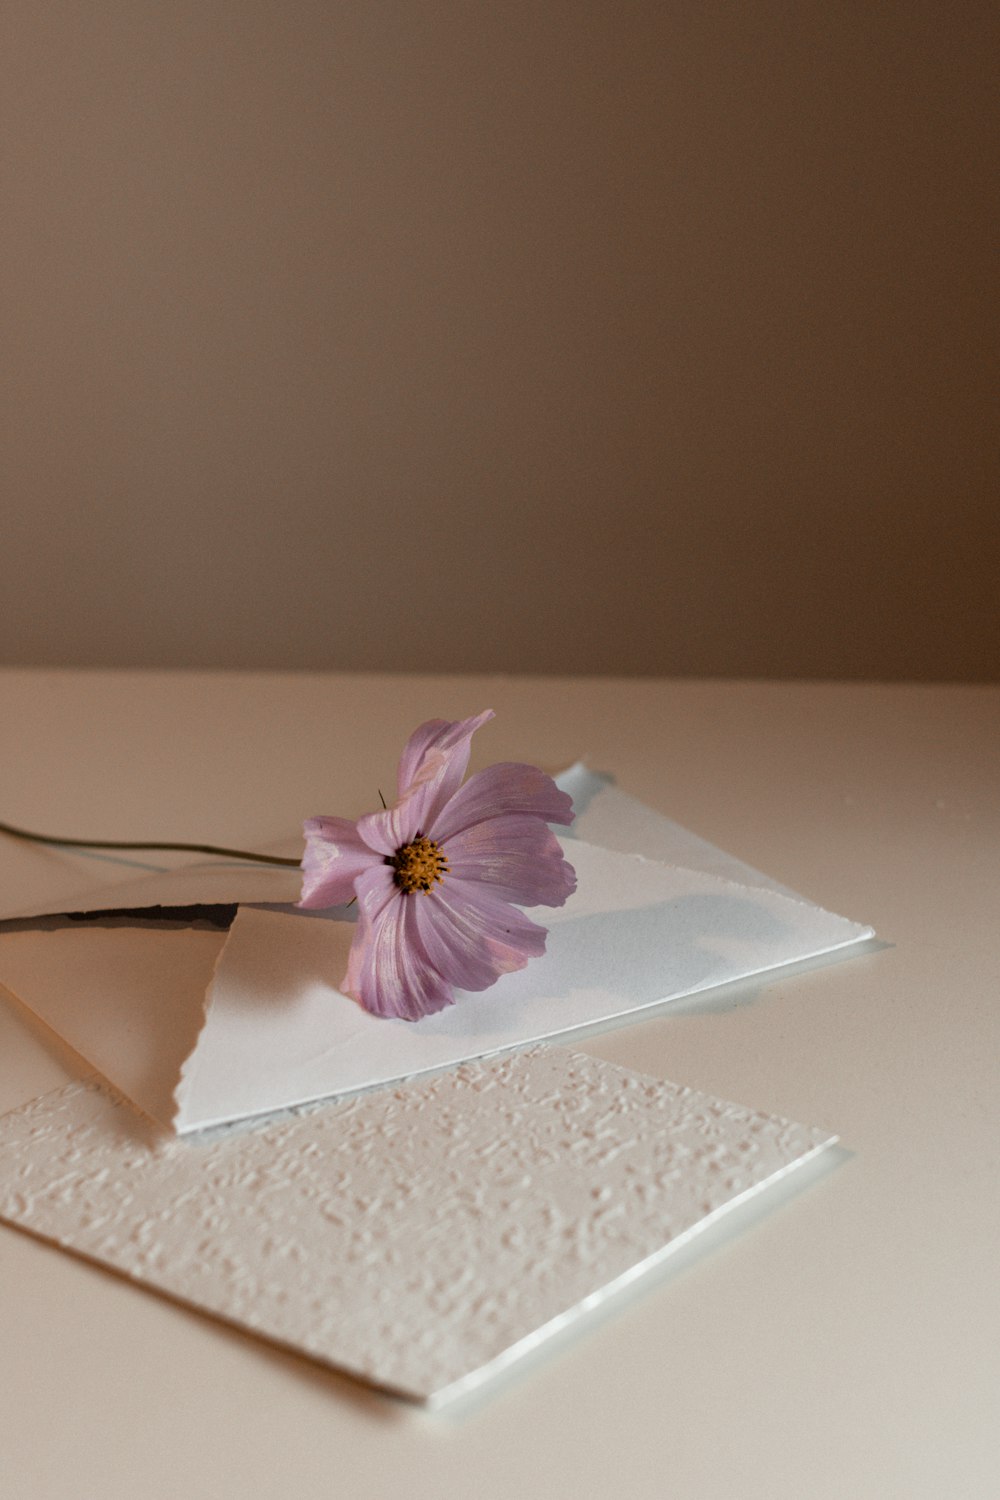 un fiore rosa seduto sopra un pezzo di carta